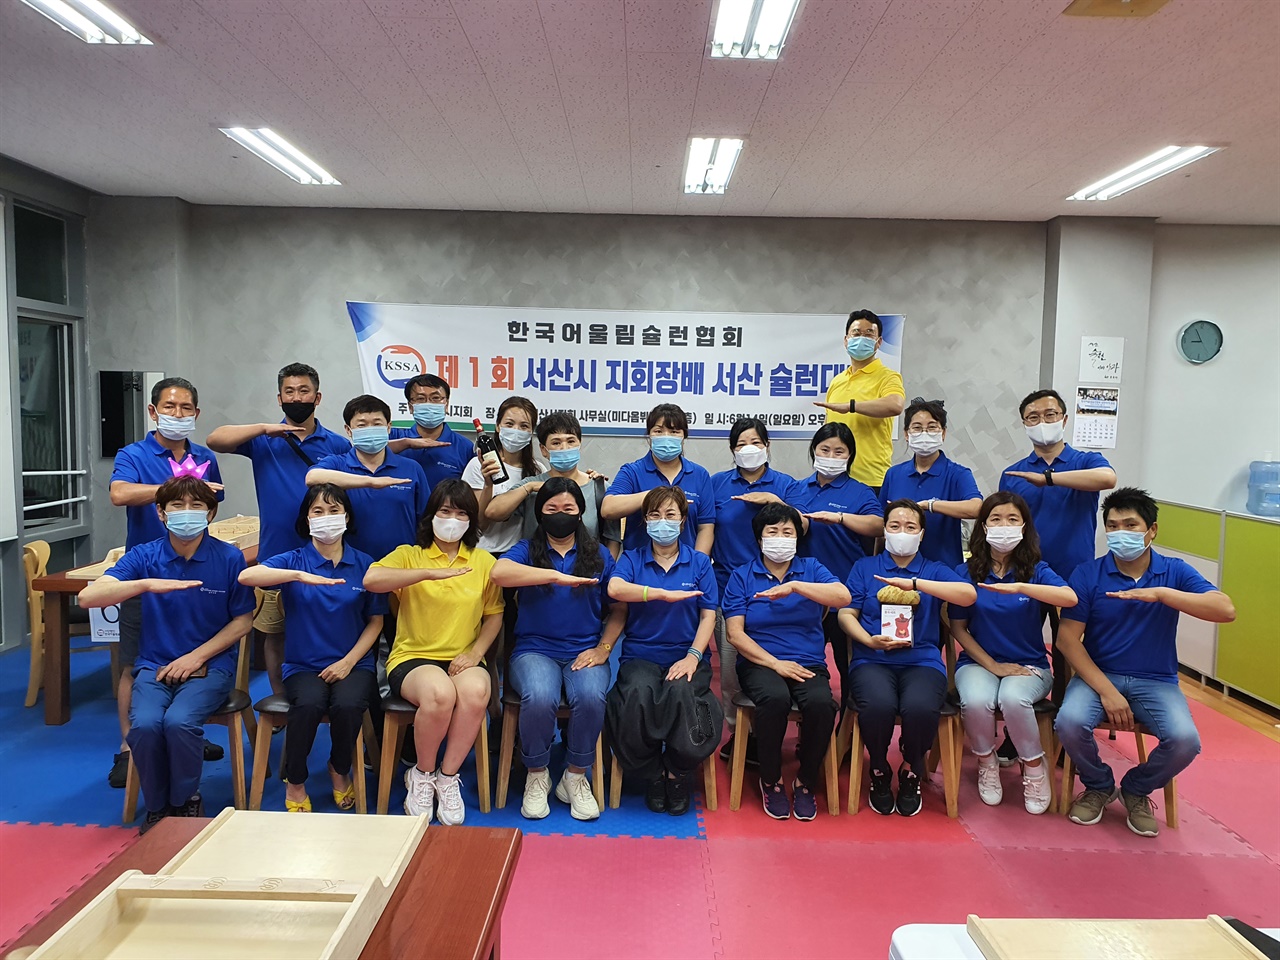 한국어울림슐런협회 서산시지회는 매주 30여 명의 회원들이 모여 자체대회를 개최하고 붐 조성에 나서고 있다. 모임을 마친 회원들이 포즈를 취하고 있다.